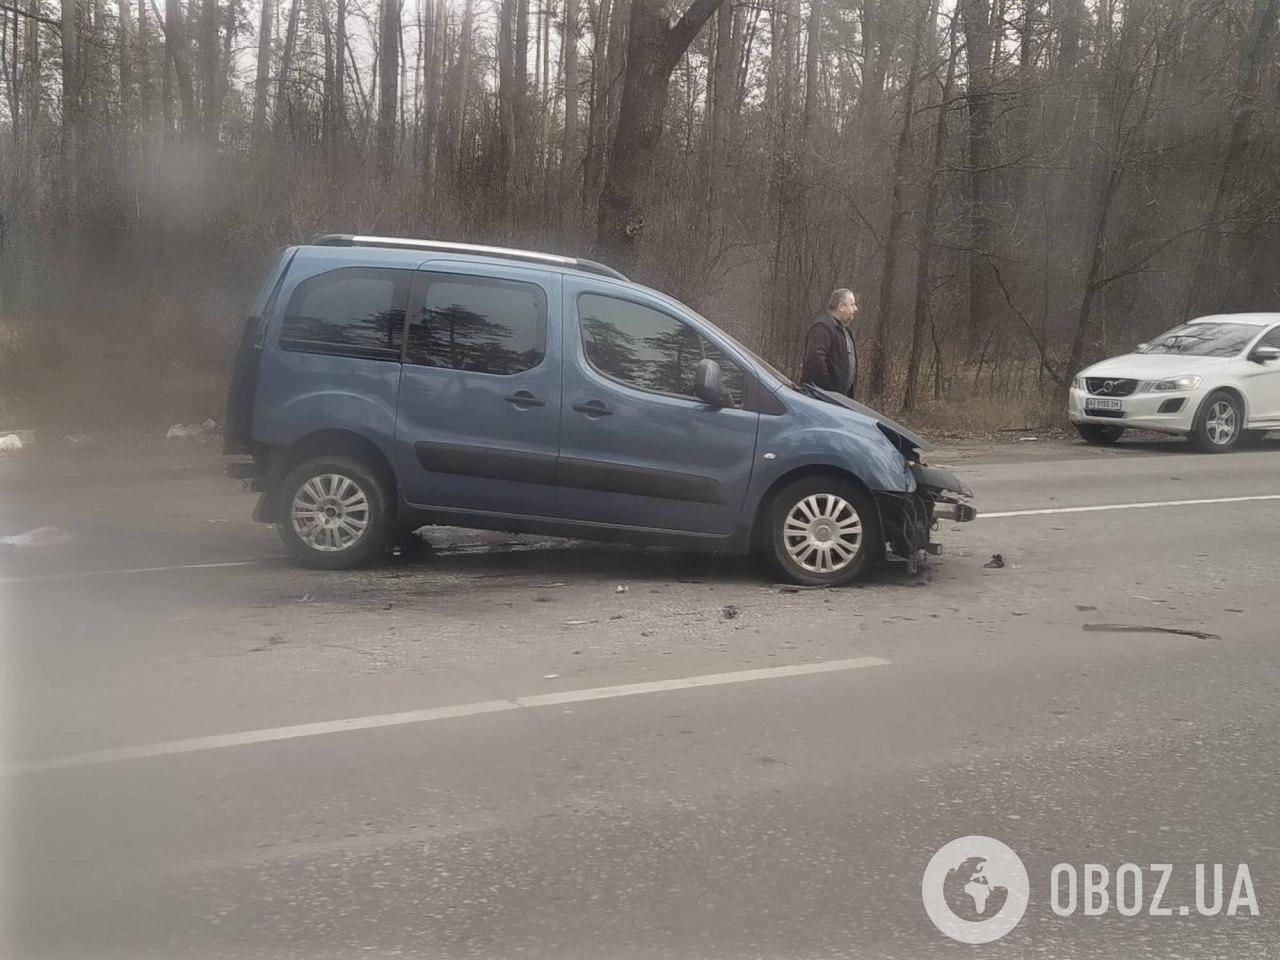 Под Киевом лоб в лоб столкнулись два авто